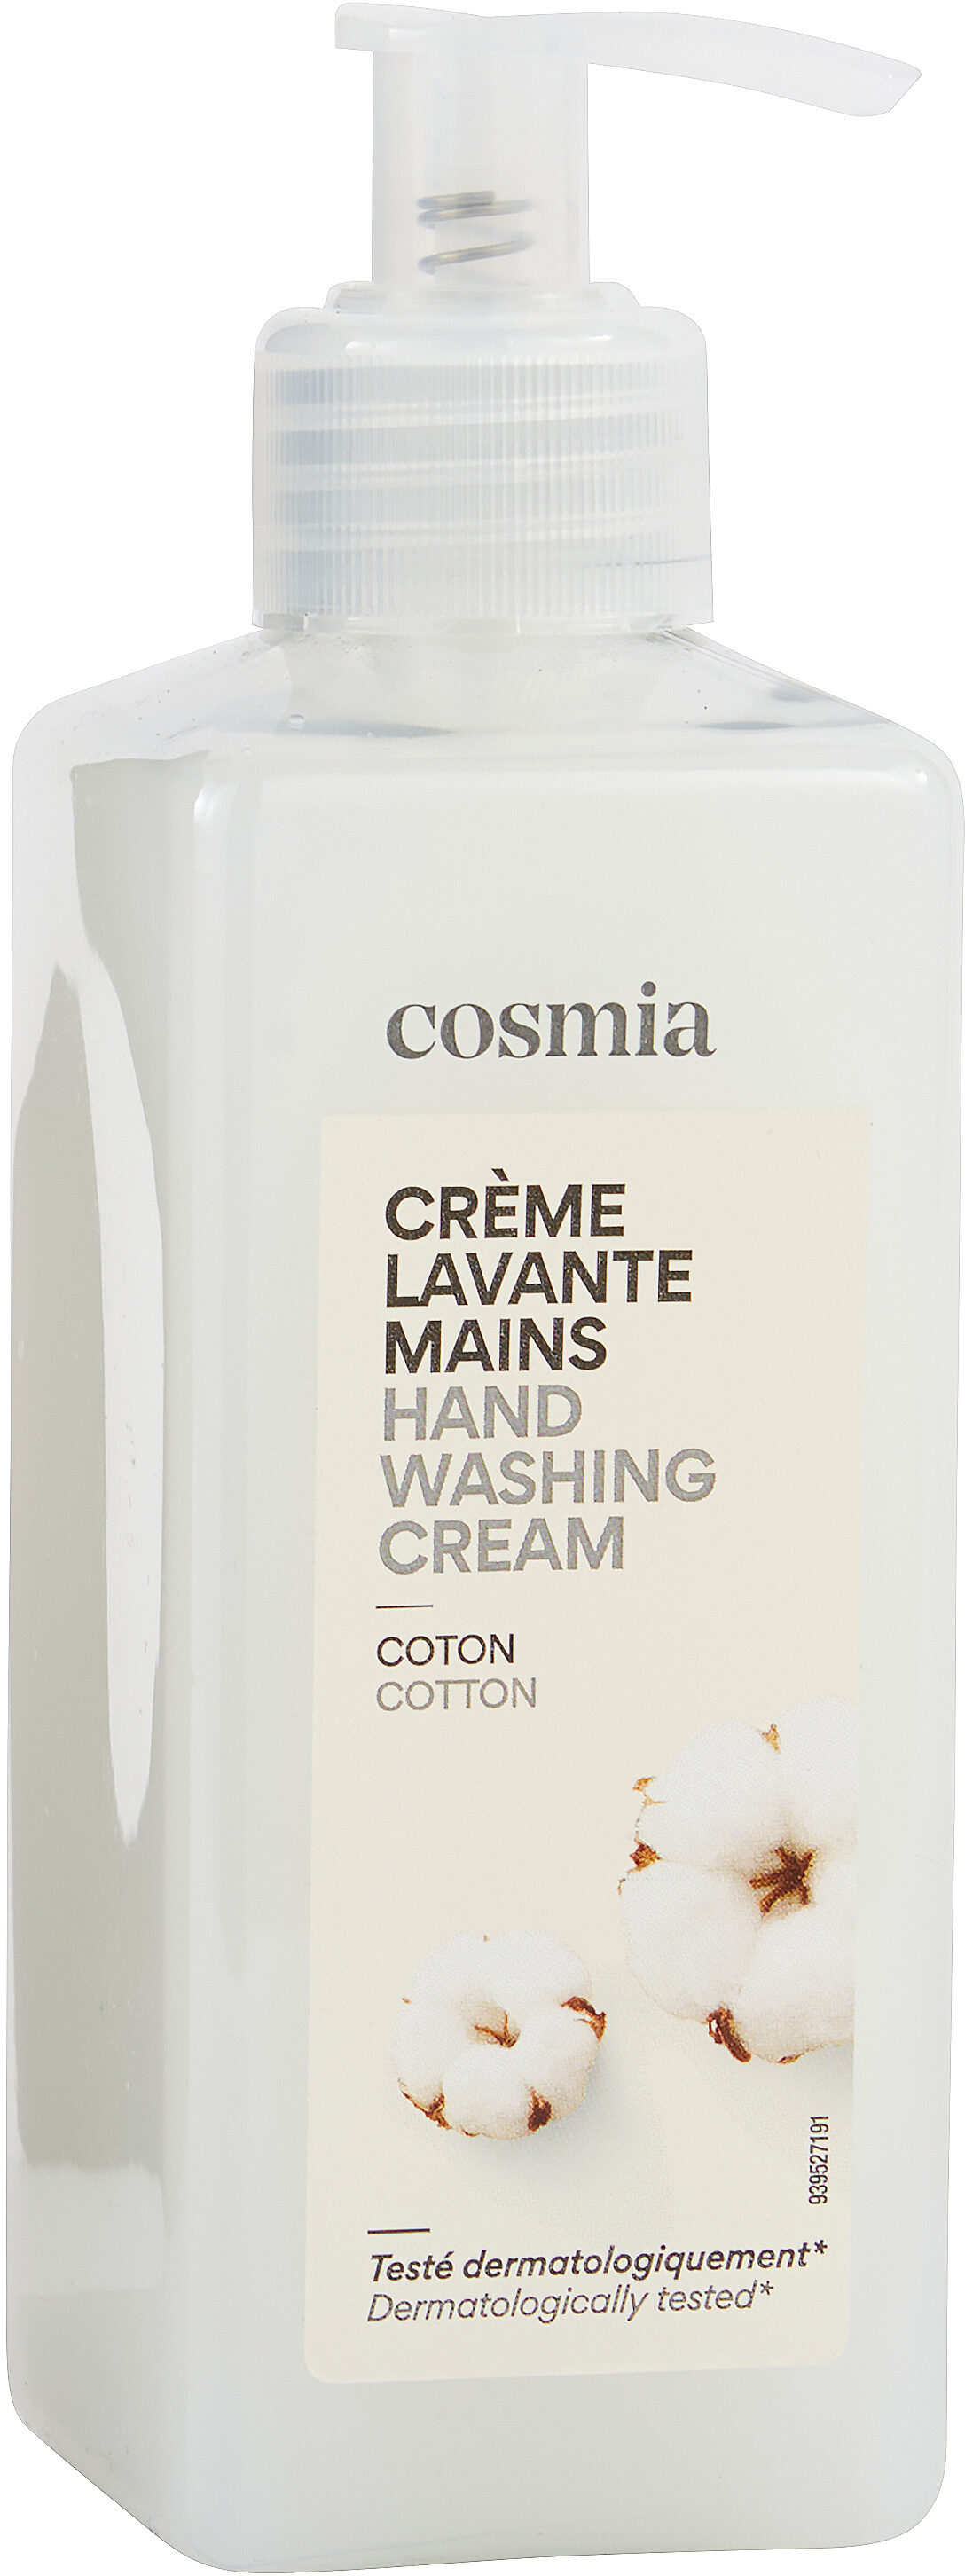 Crème lavante mains - 製品 - fr